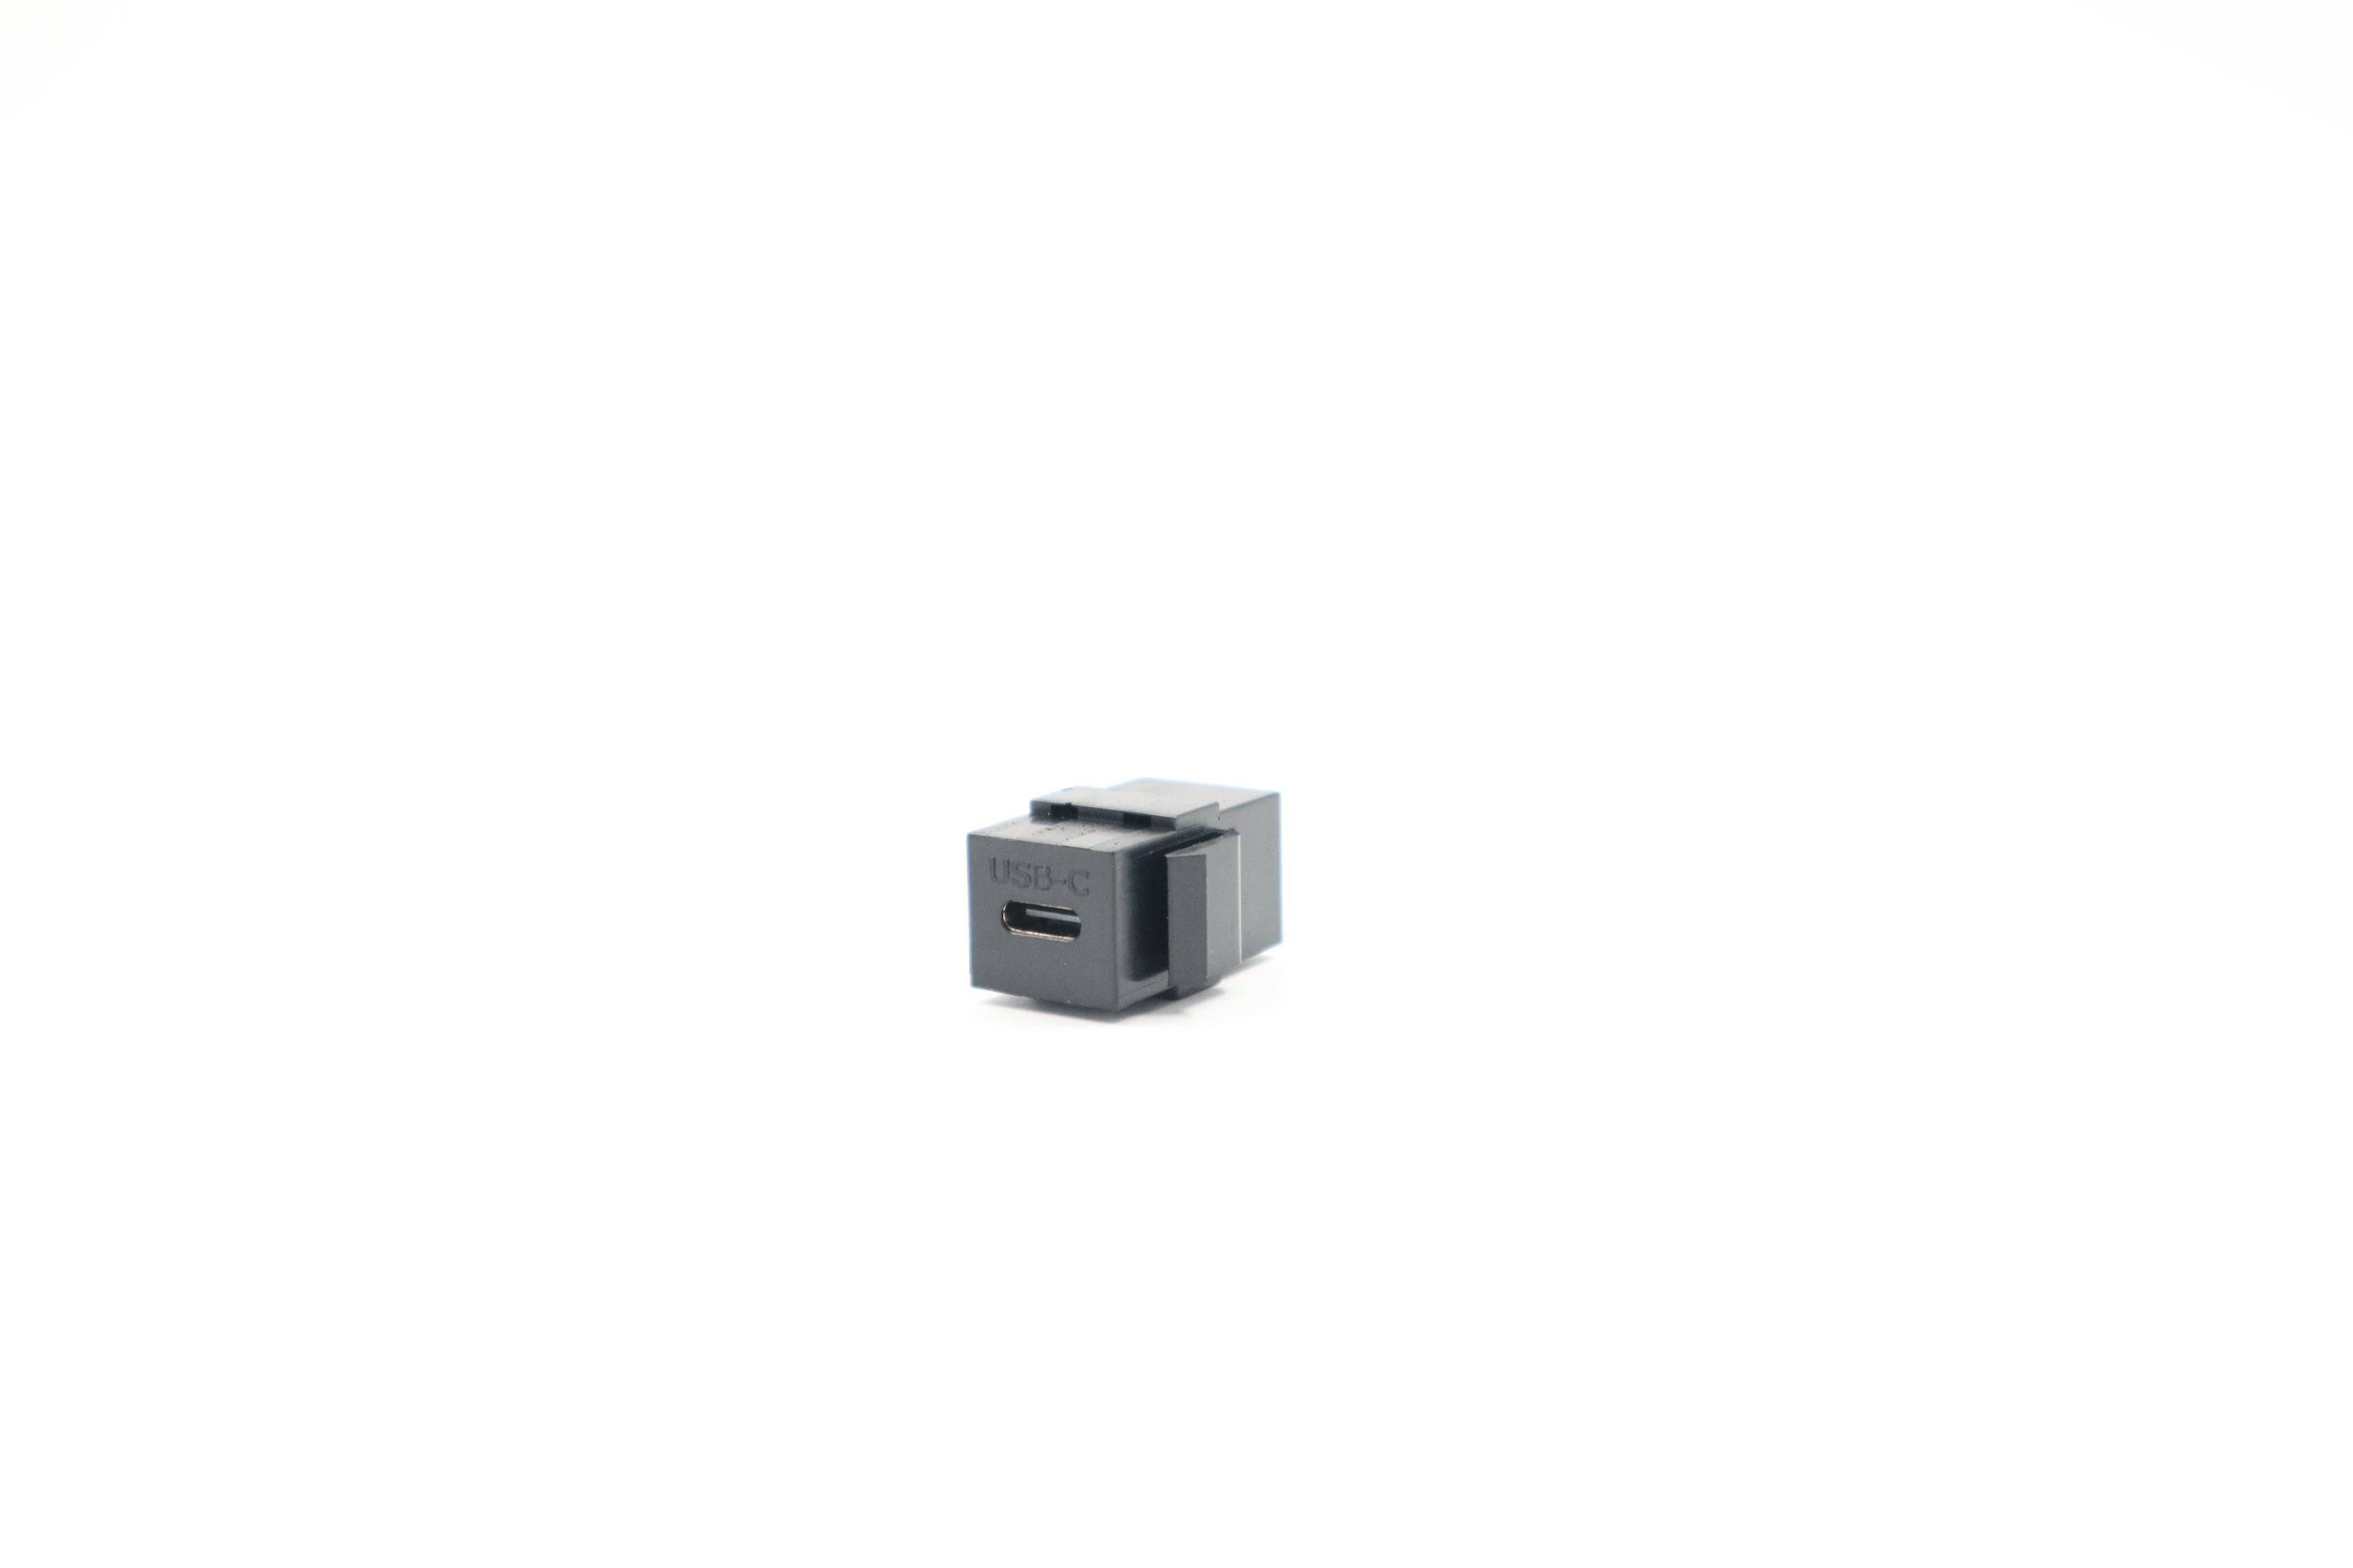 ZŁĄCZE USB C 3.1 KEYSTONE CZARNE (Zdjęcie 2)